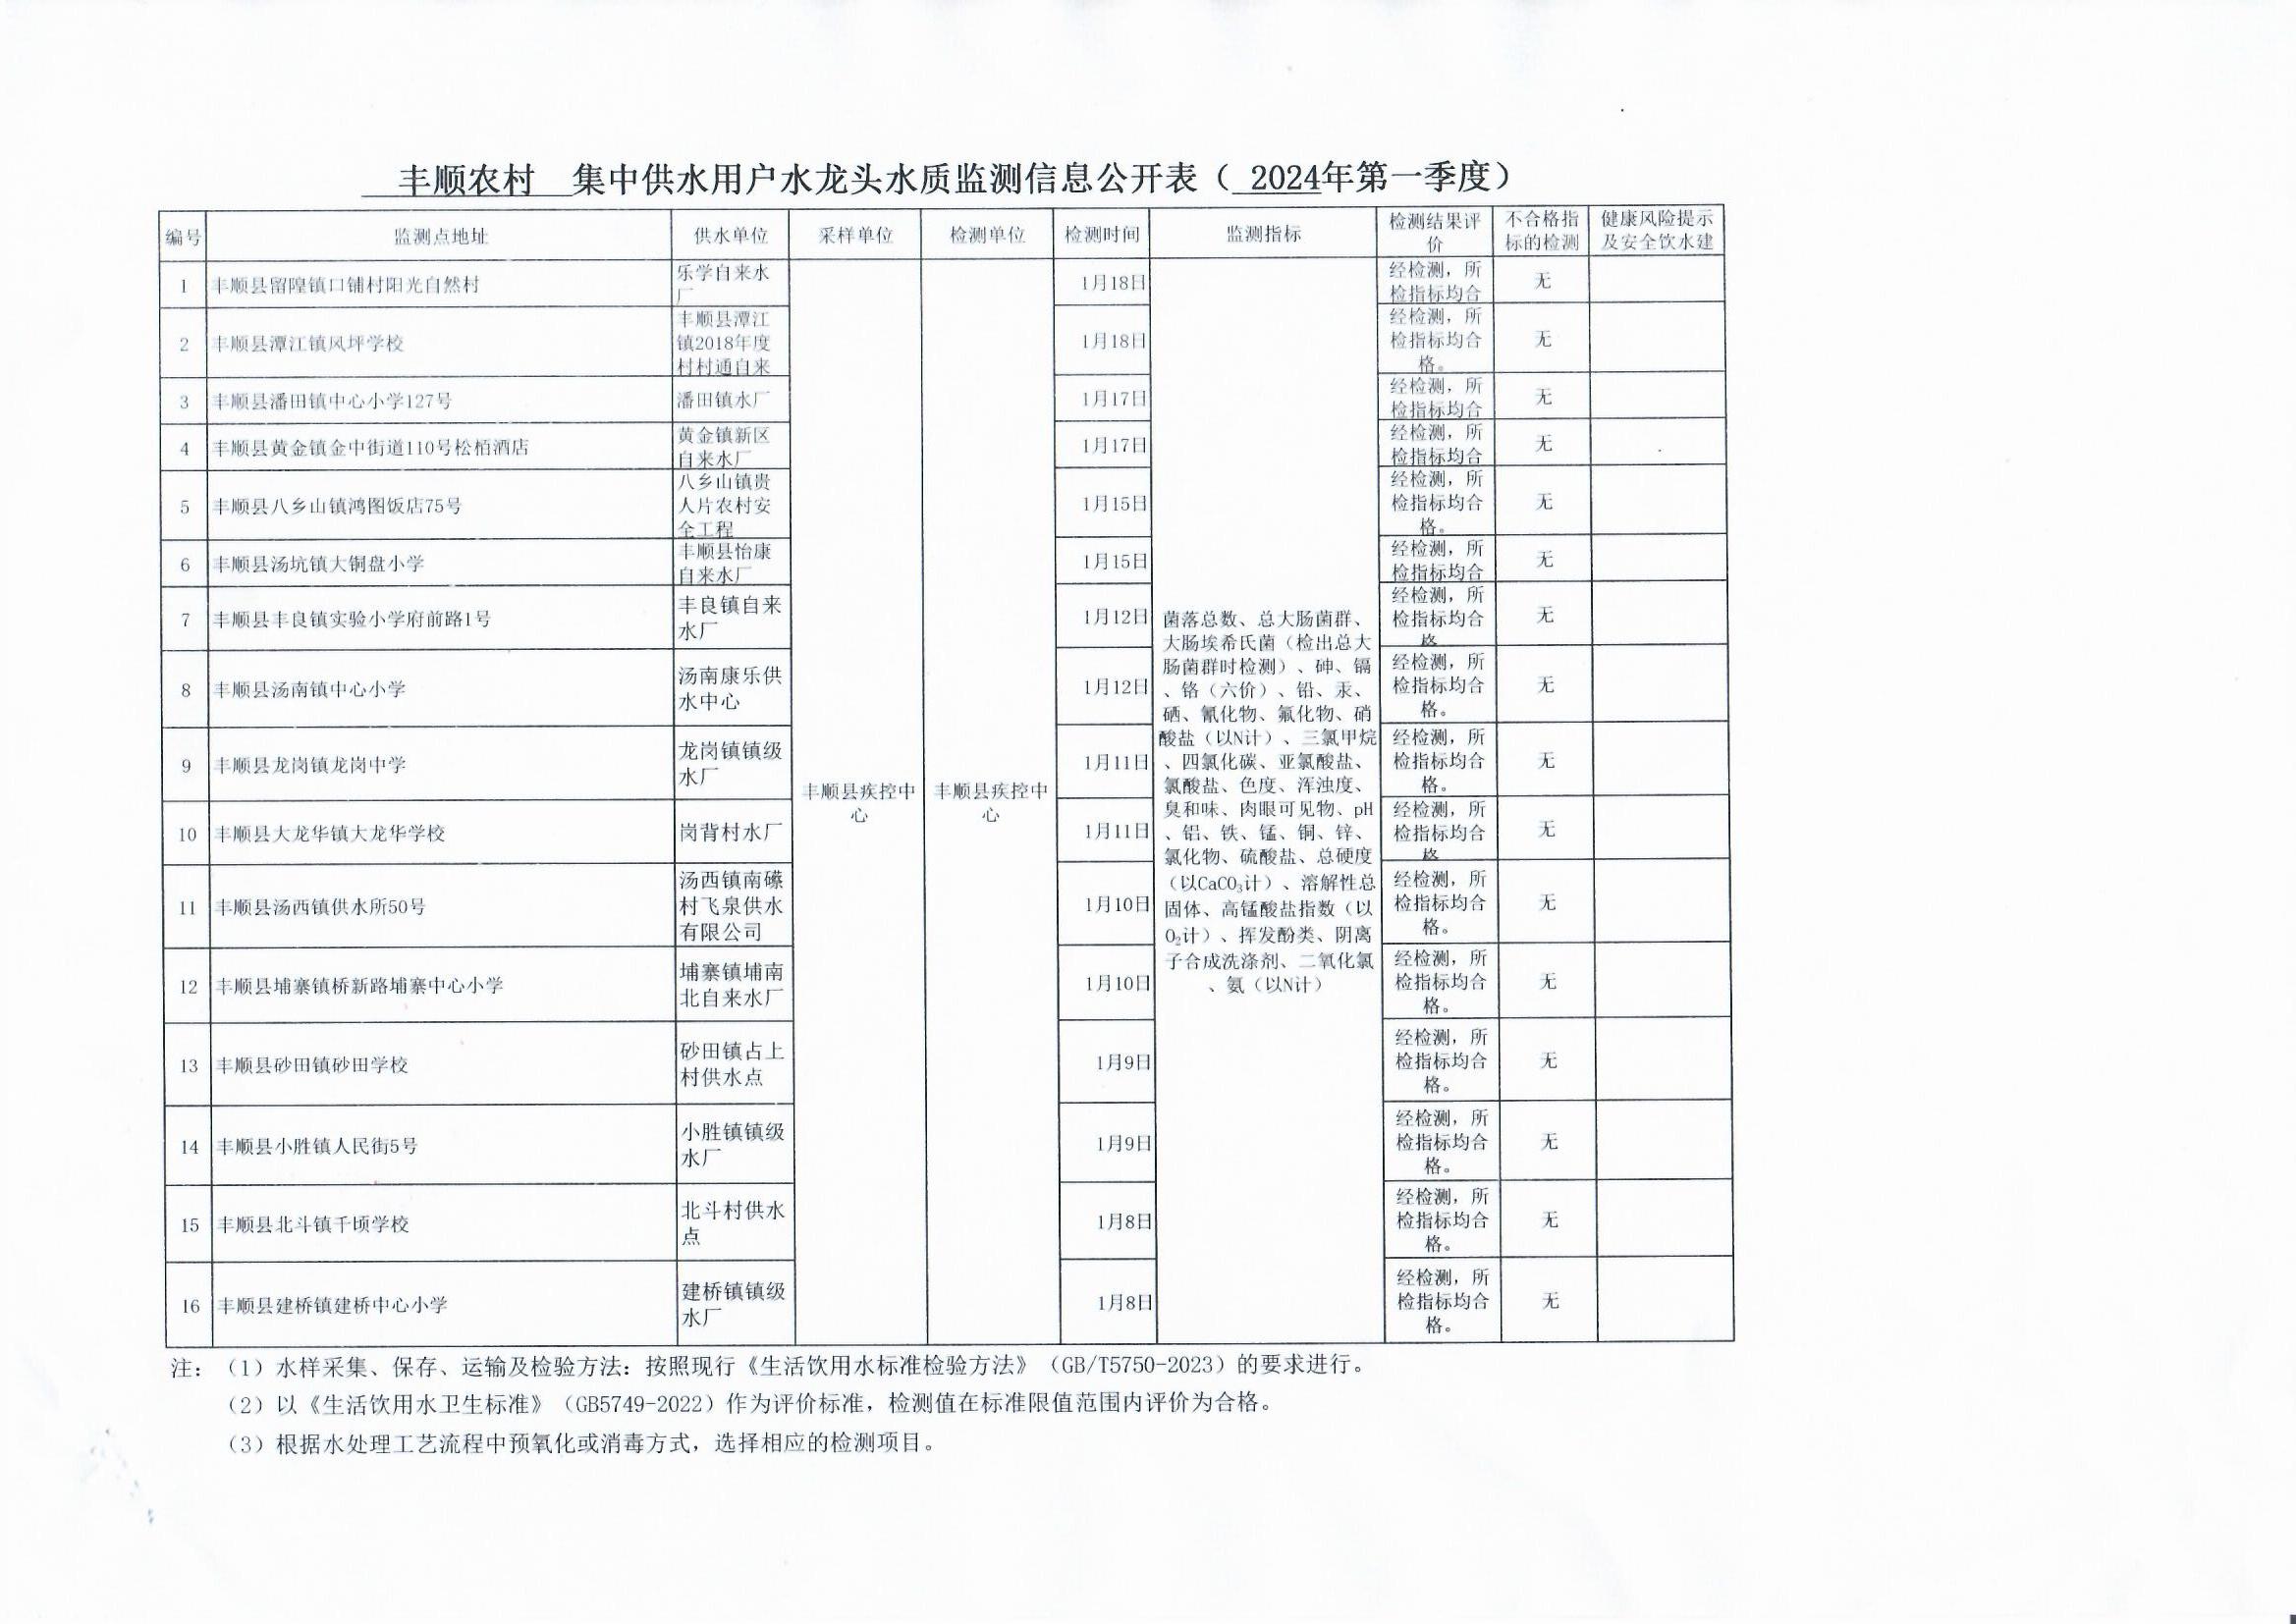 丰顺县农村用户水龙头水质监测信息公开表（2024年第一季度）.jpg